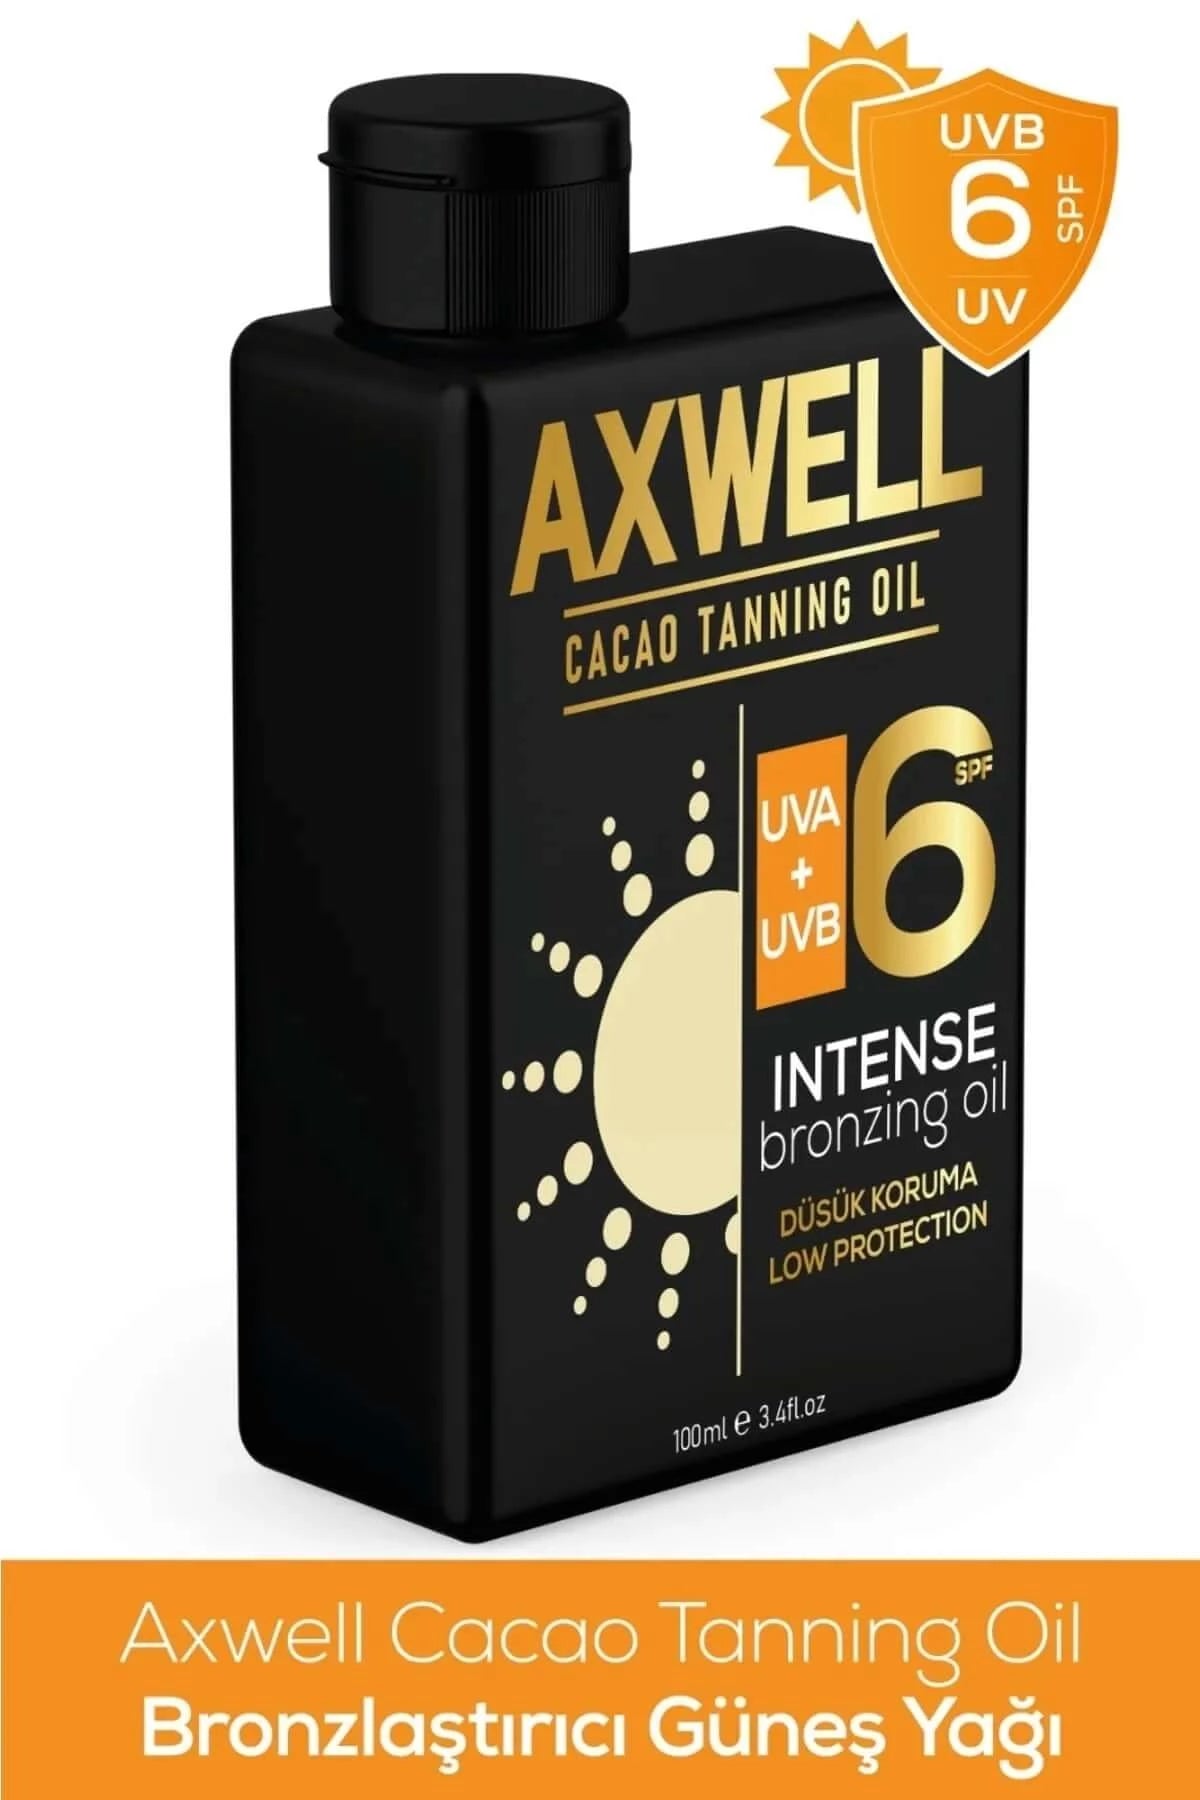 AXWELL Cacao Tanning Oil Bronzlaştırıcı Güneş Yağı Spf 6